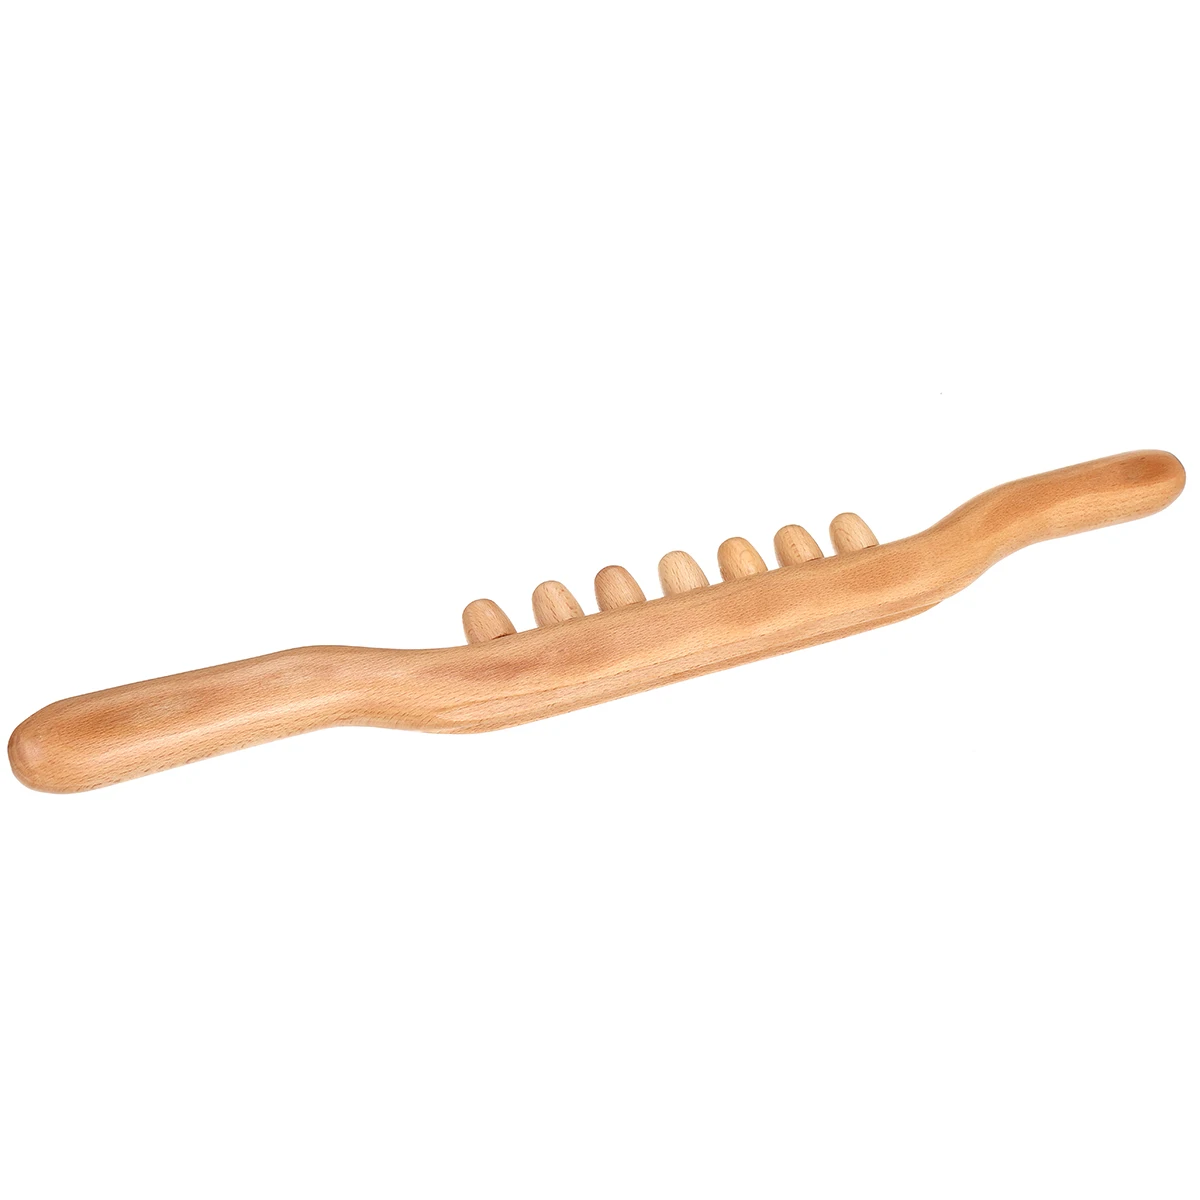 4 шт. деревянный Gua Sha Stick эффективный здоровый GuaSha Rob для спины шеи плеча живота ног массаж тела похудение Guasha Инструмент